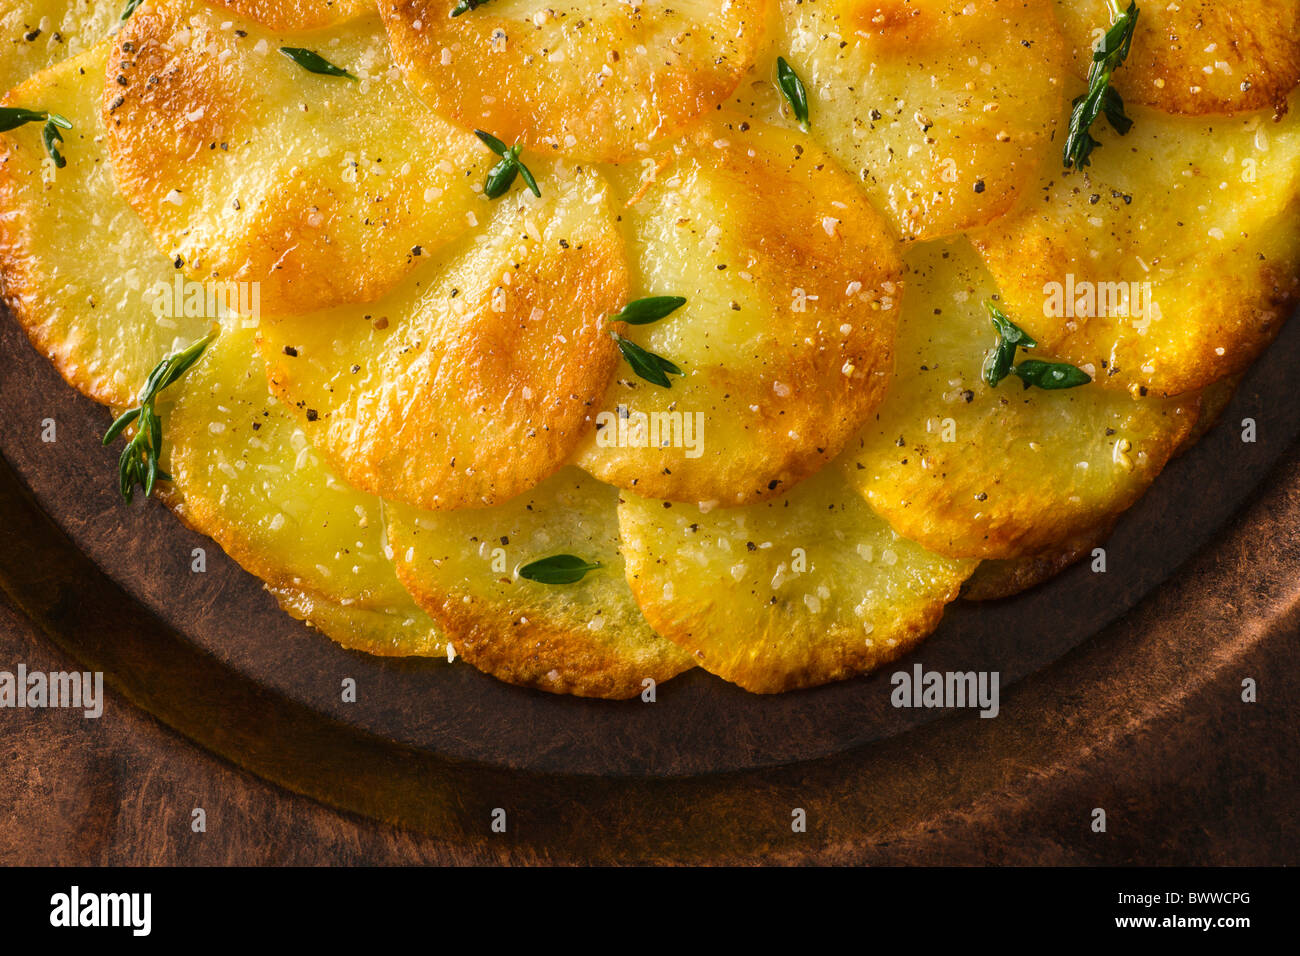 Tortas de patata o Anna aderezado con tomillo fresco, sal y pimienta y se sirve en un plato rústico. Foto de stock